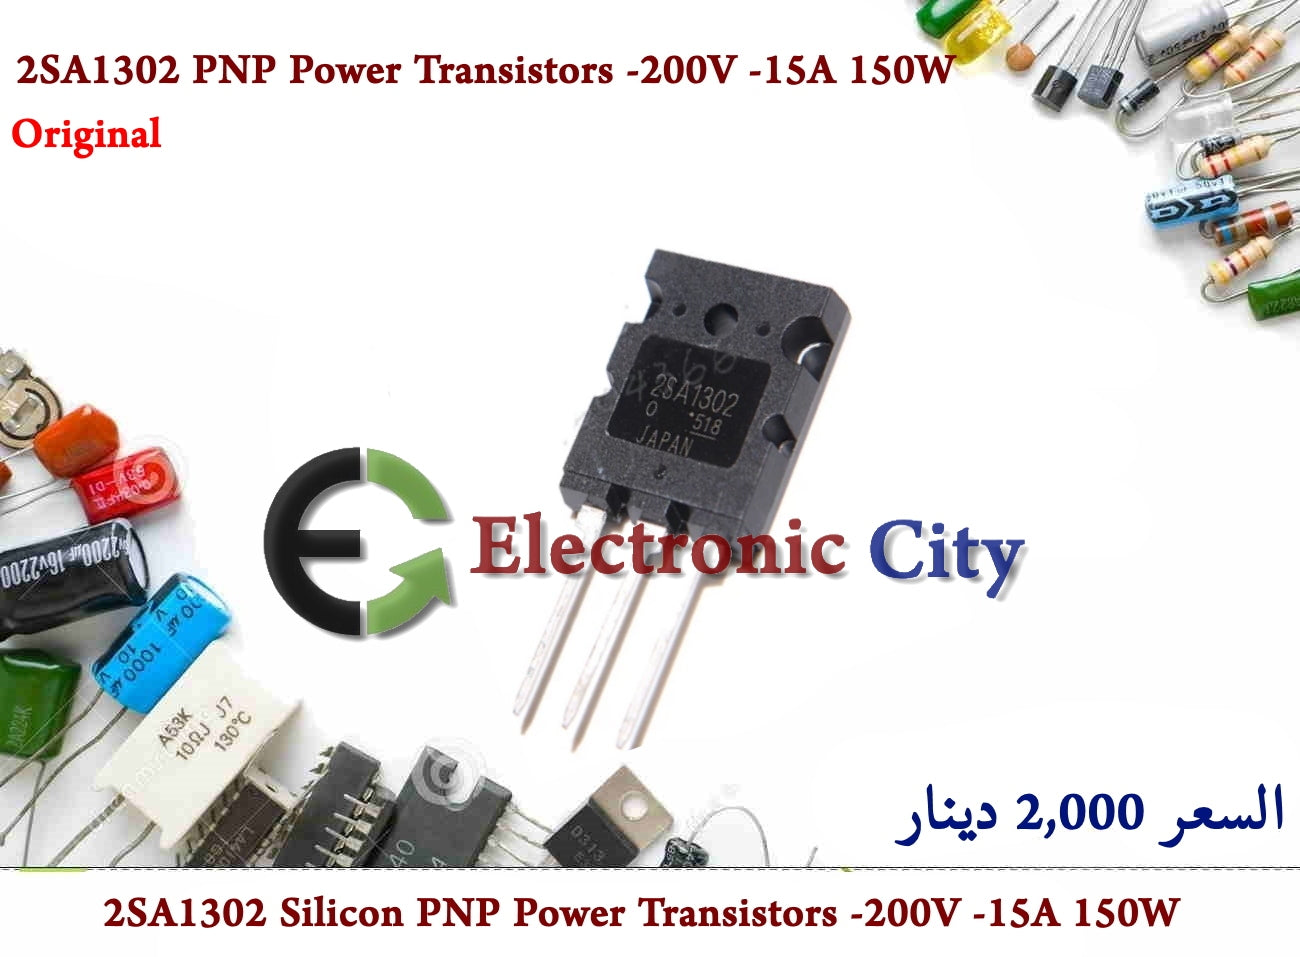 2SA1302 Silicon PNP Power Transistors -200V -15A 150W